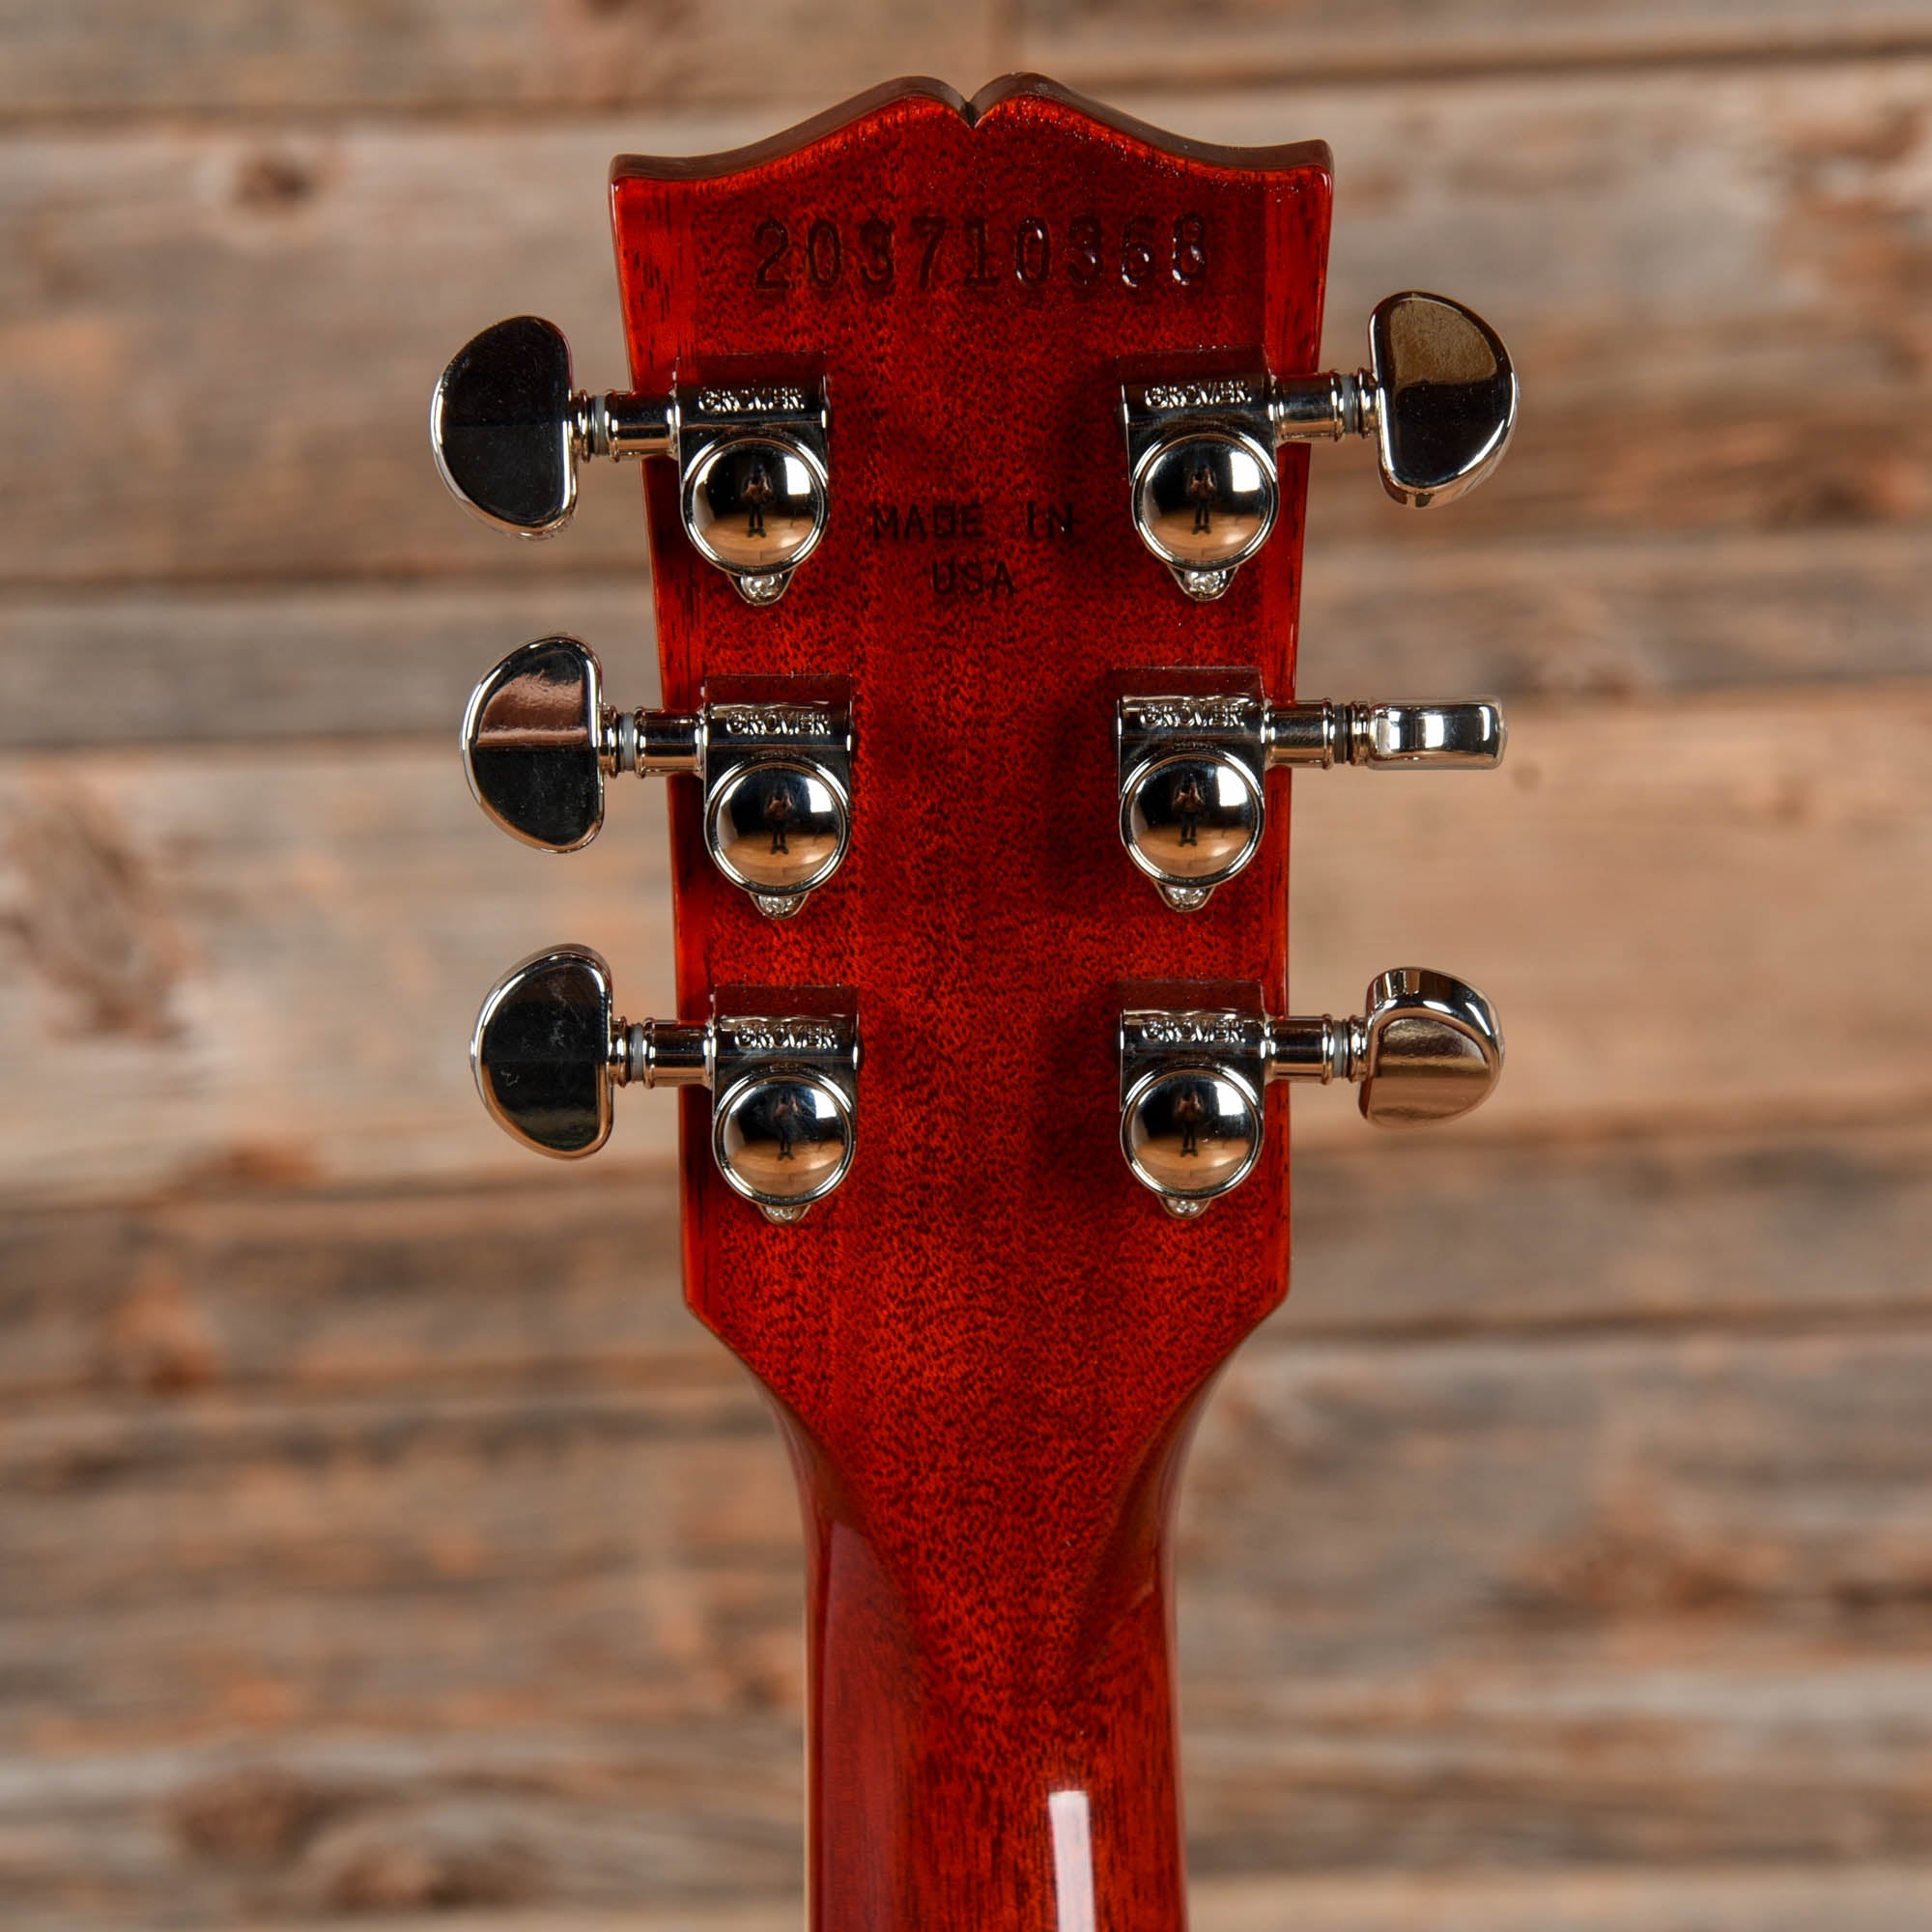 Gibson Les Paul Standard 60s Sunburst 2021